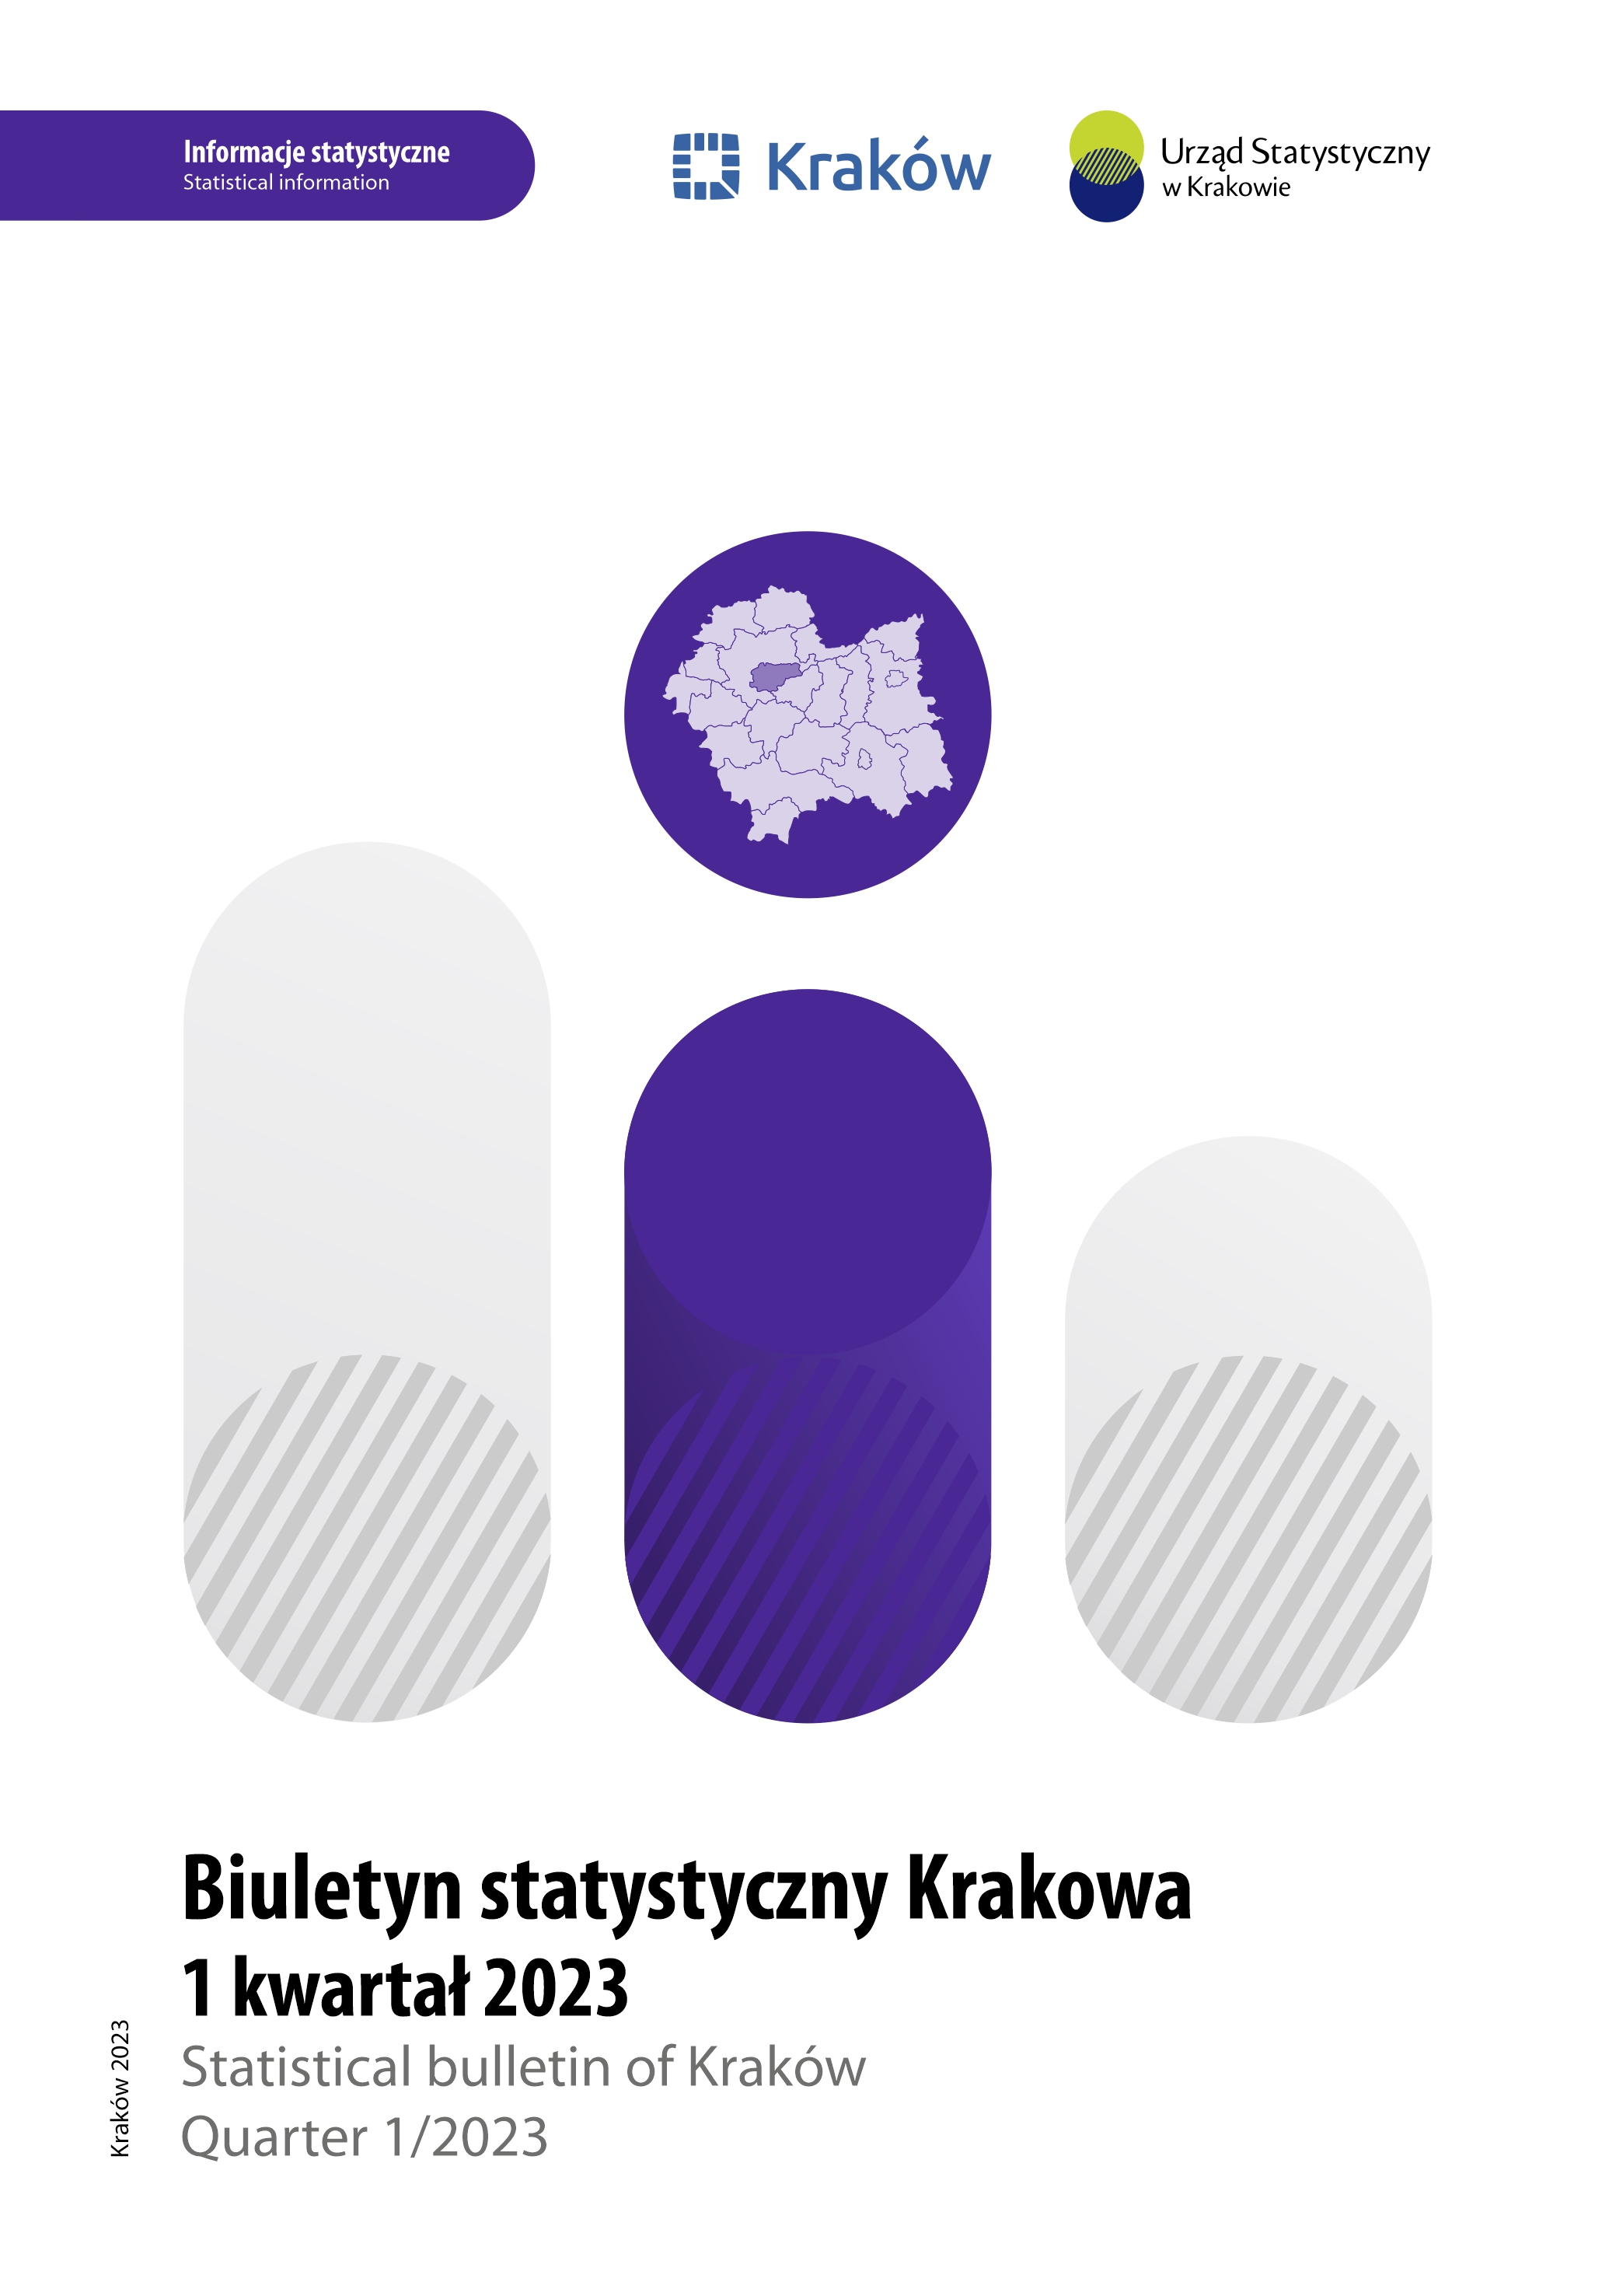 Okładka Biuletynu Statystycznego Miasta Krakowa za I kwartał 2023